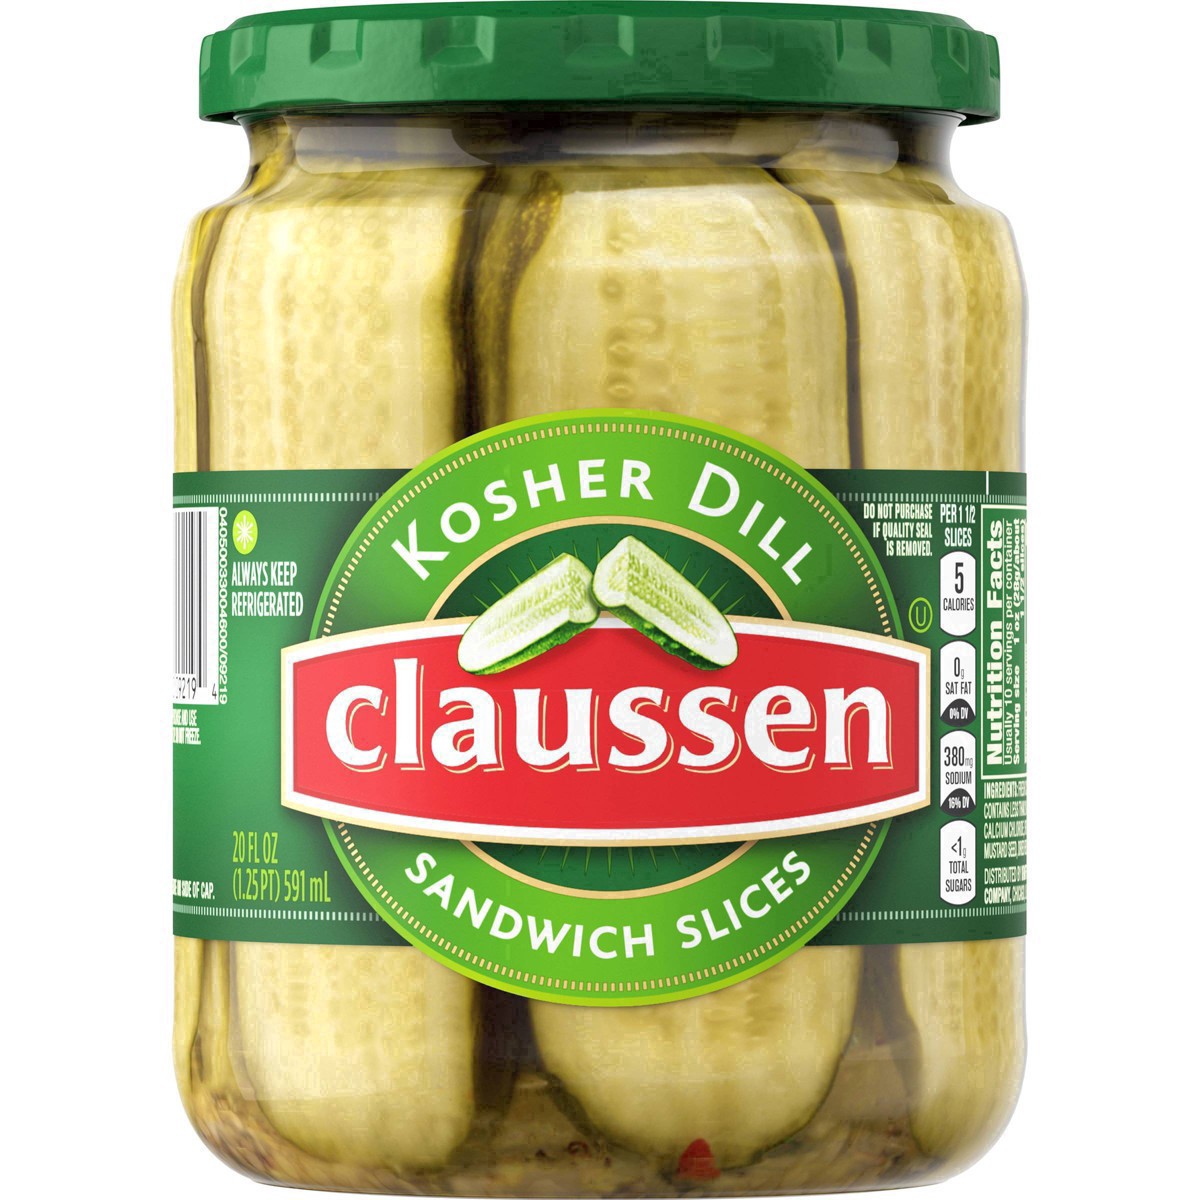 slide 141 of 144, Claussen Kosher Dill Pickle Sandwich Slices, 20 fl. oz. Jar, 20 fl oz